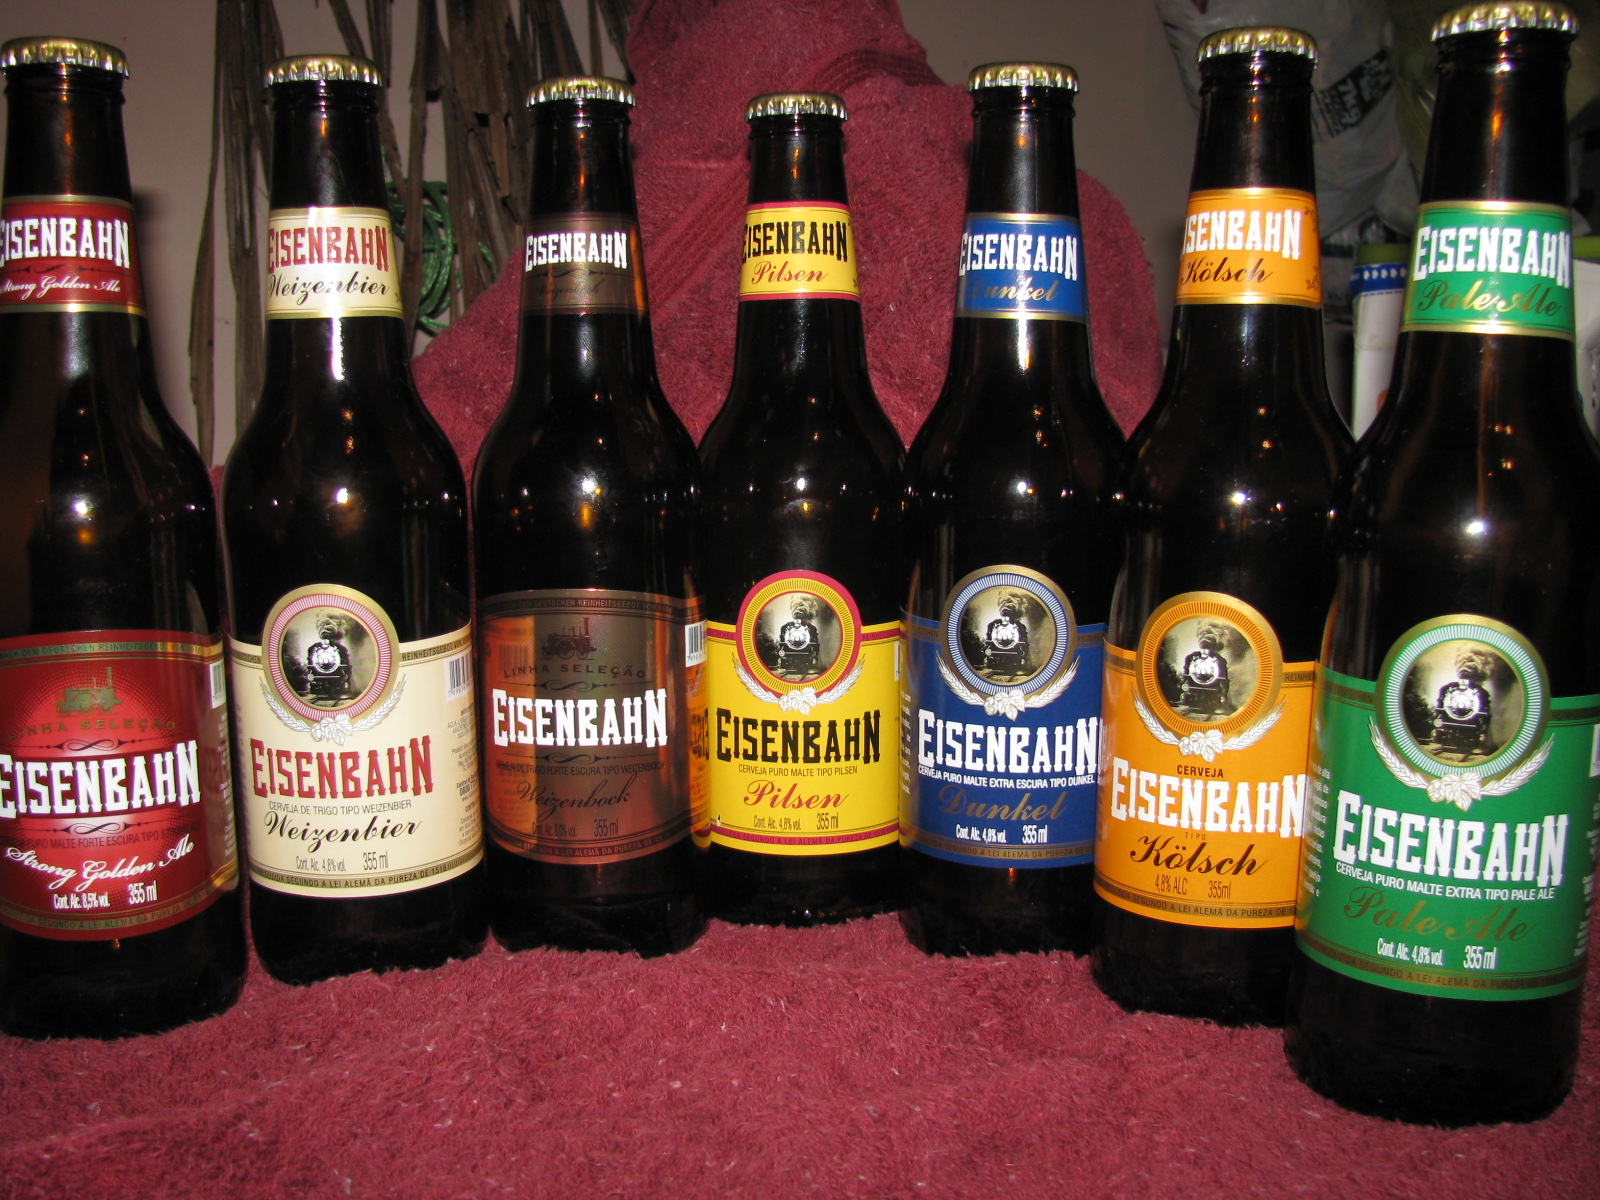 Eisenbahn+Beers++Strong+Weizen+Weizenbock+Pilsen+Dunkel+Kolsch+Pale+Ale.jpg